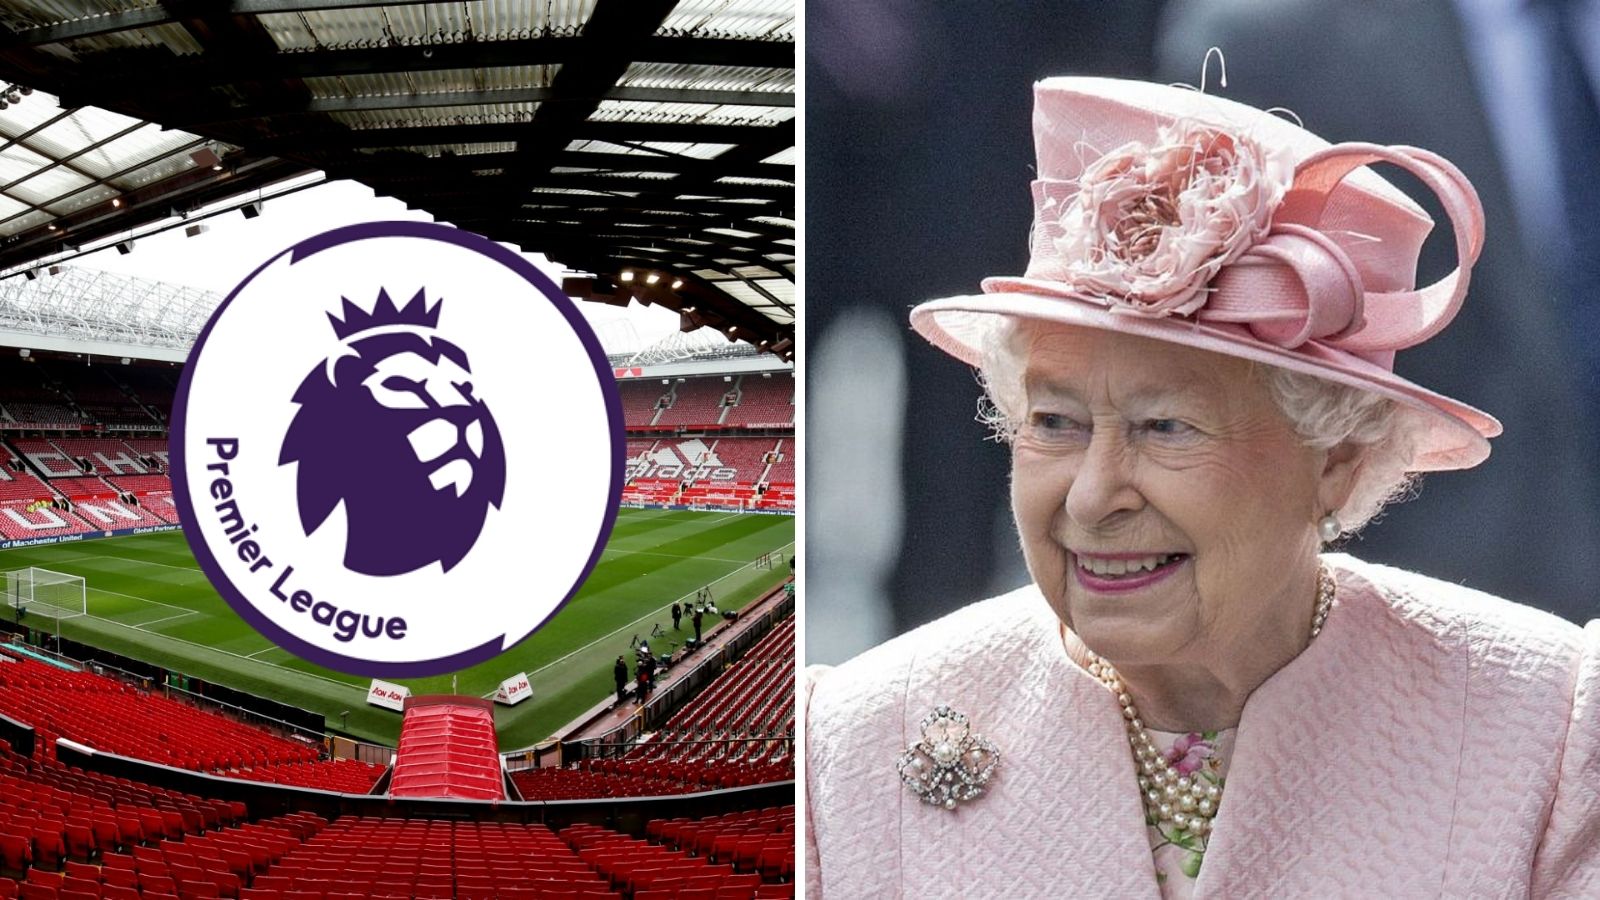 Premier League suspenderá la jornada 7 por luto Reina Isabel II (1)